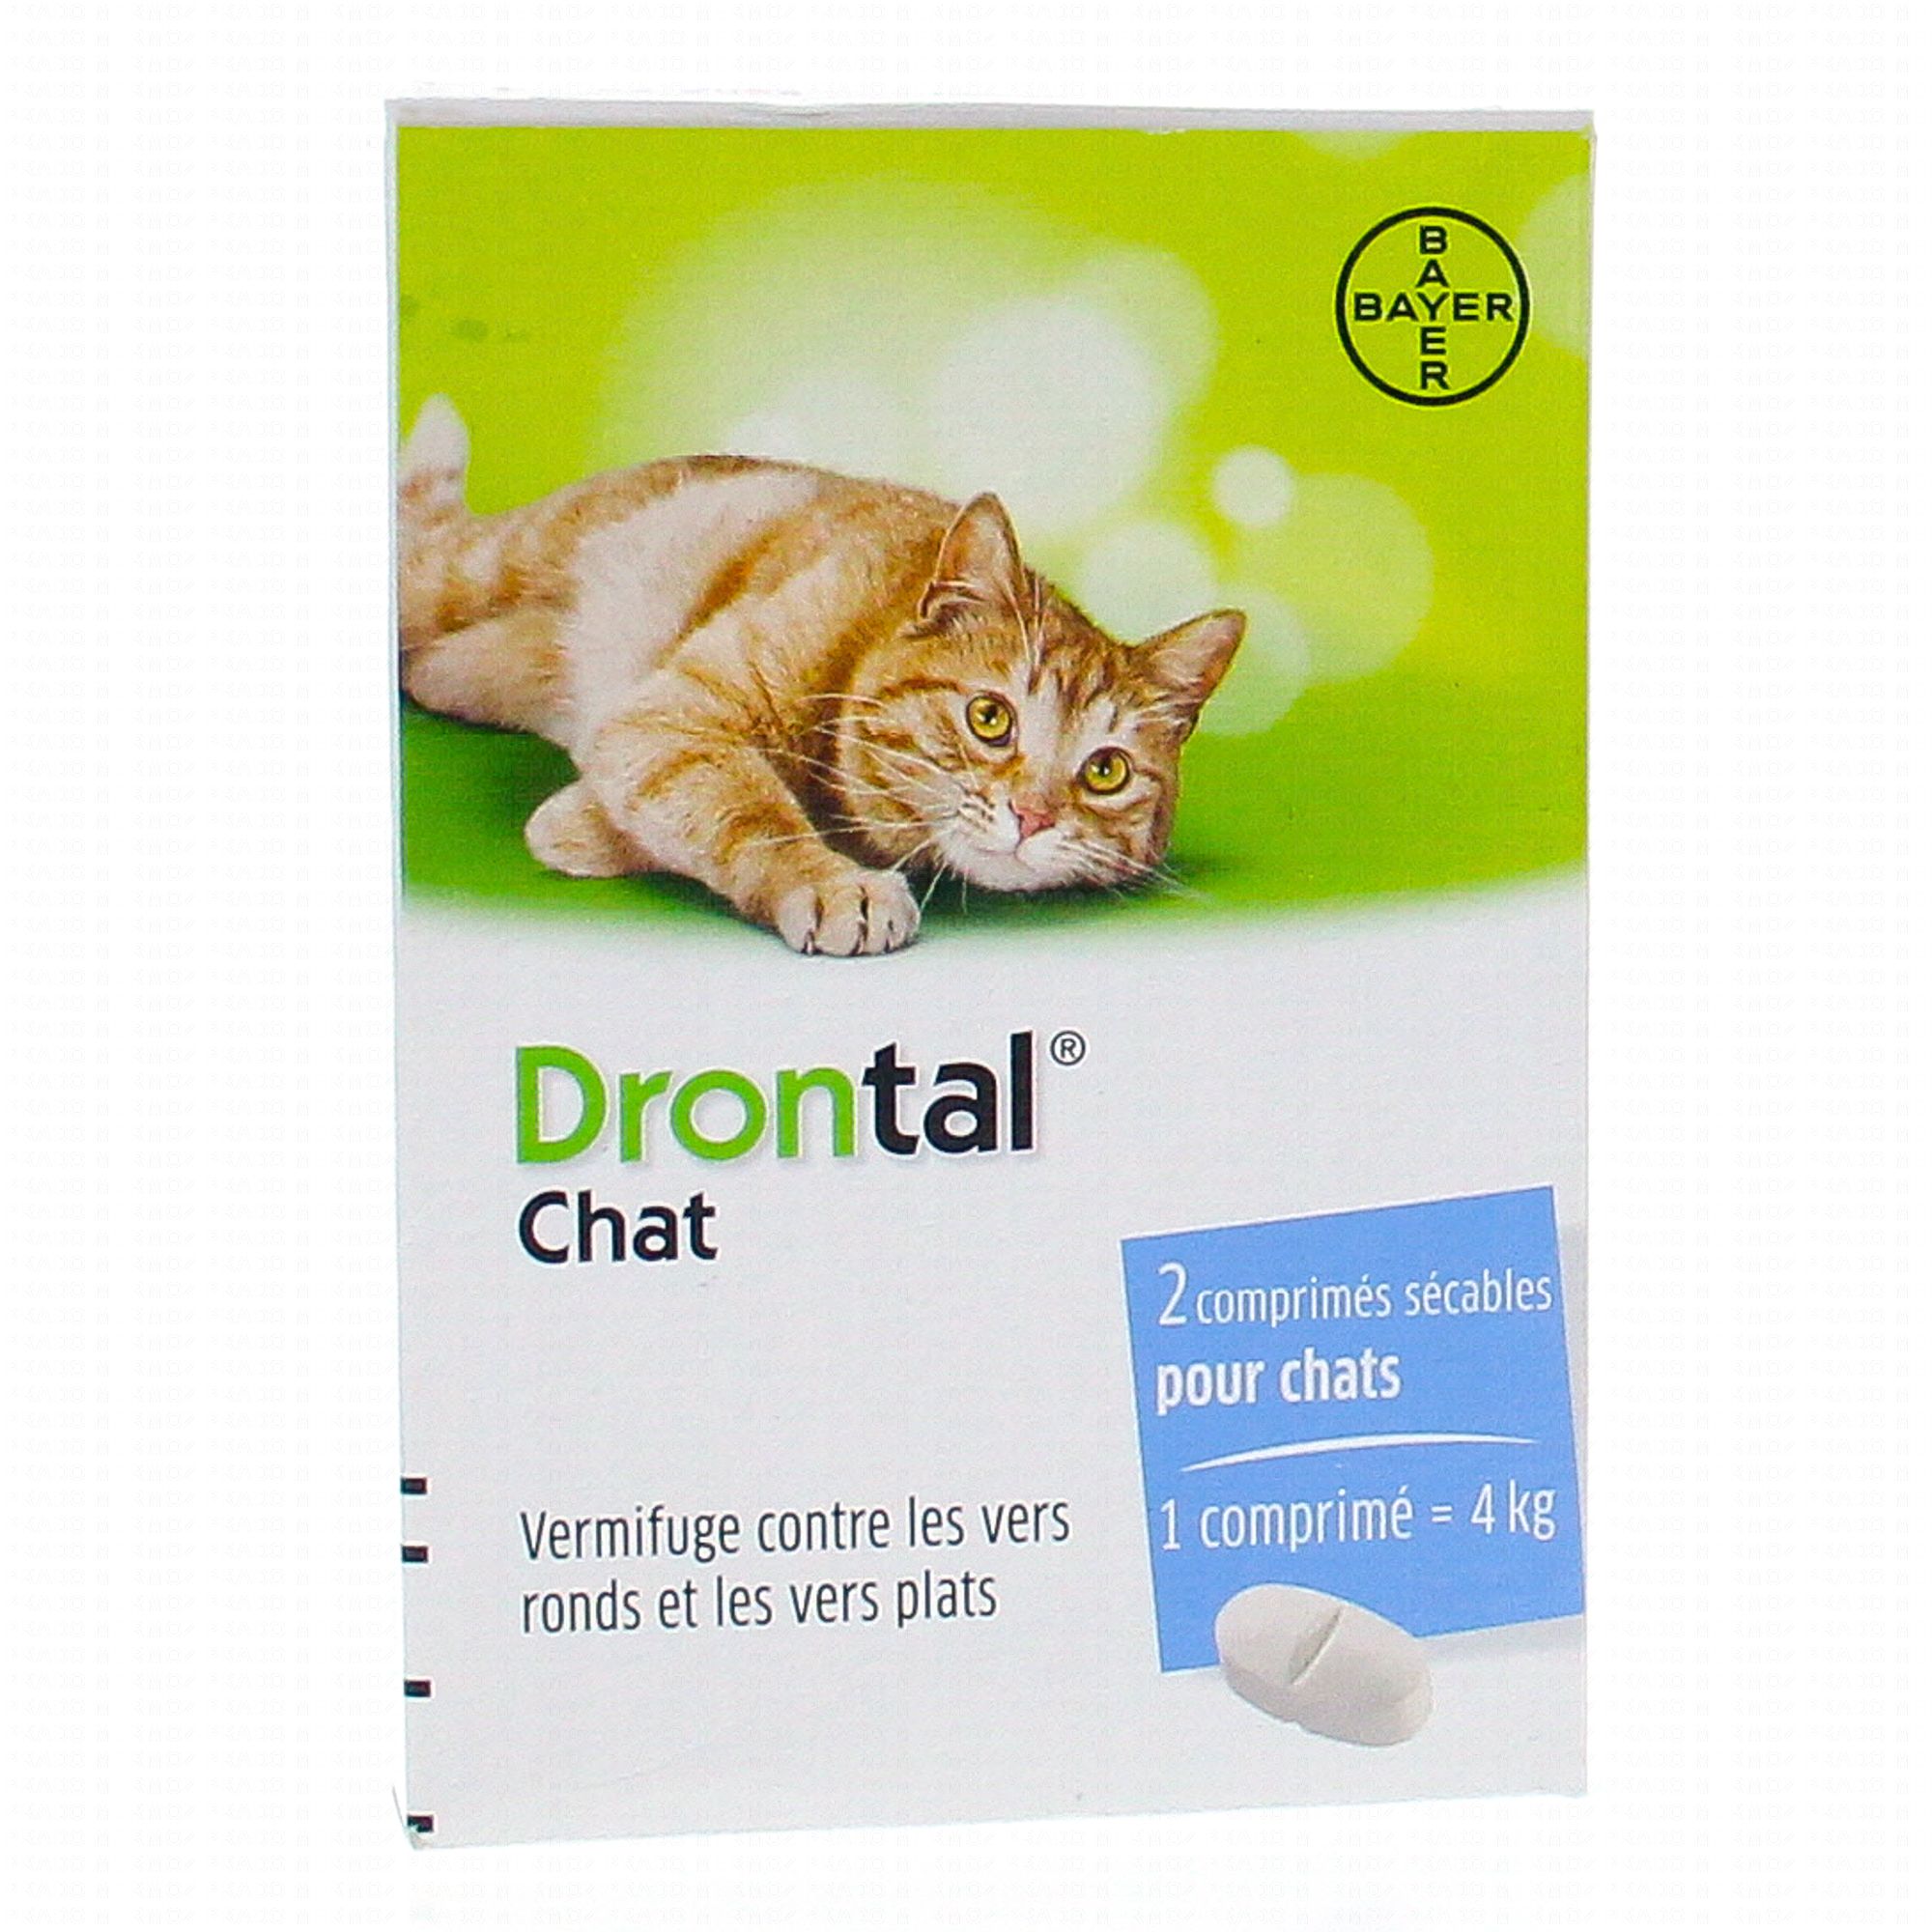 DRONTAL chat Vermifuge contre les vers ronds et les vers plats - Pharmacie  Prado Mermoz